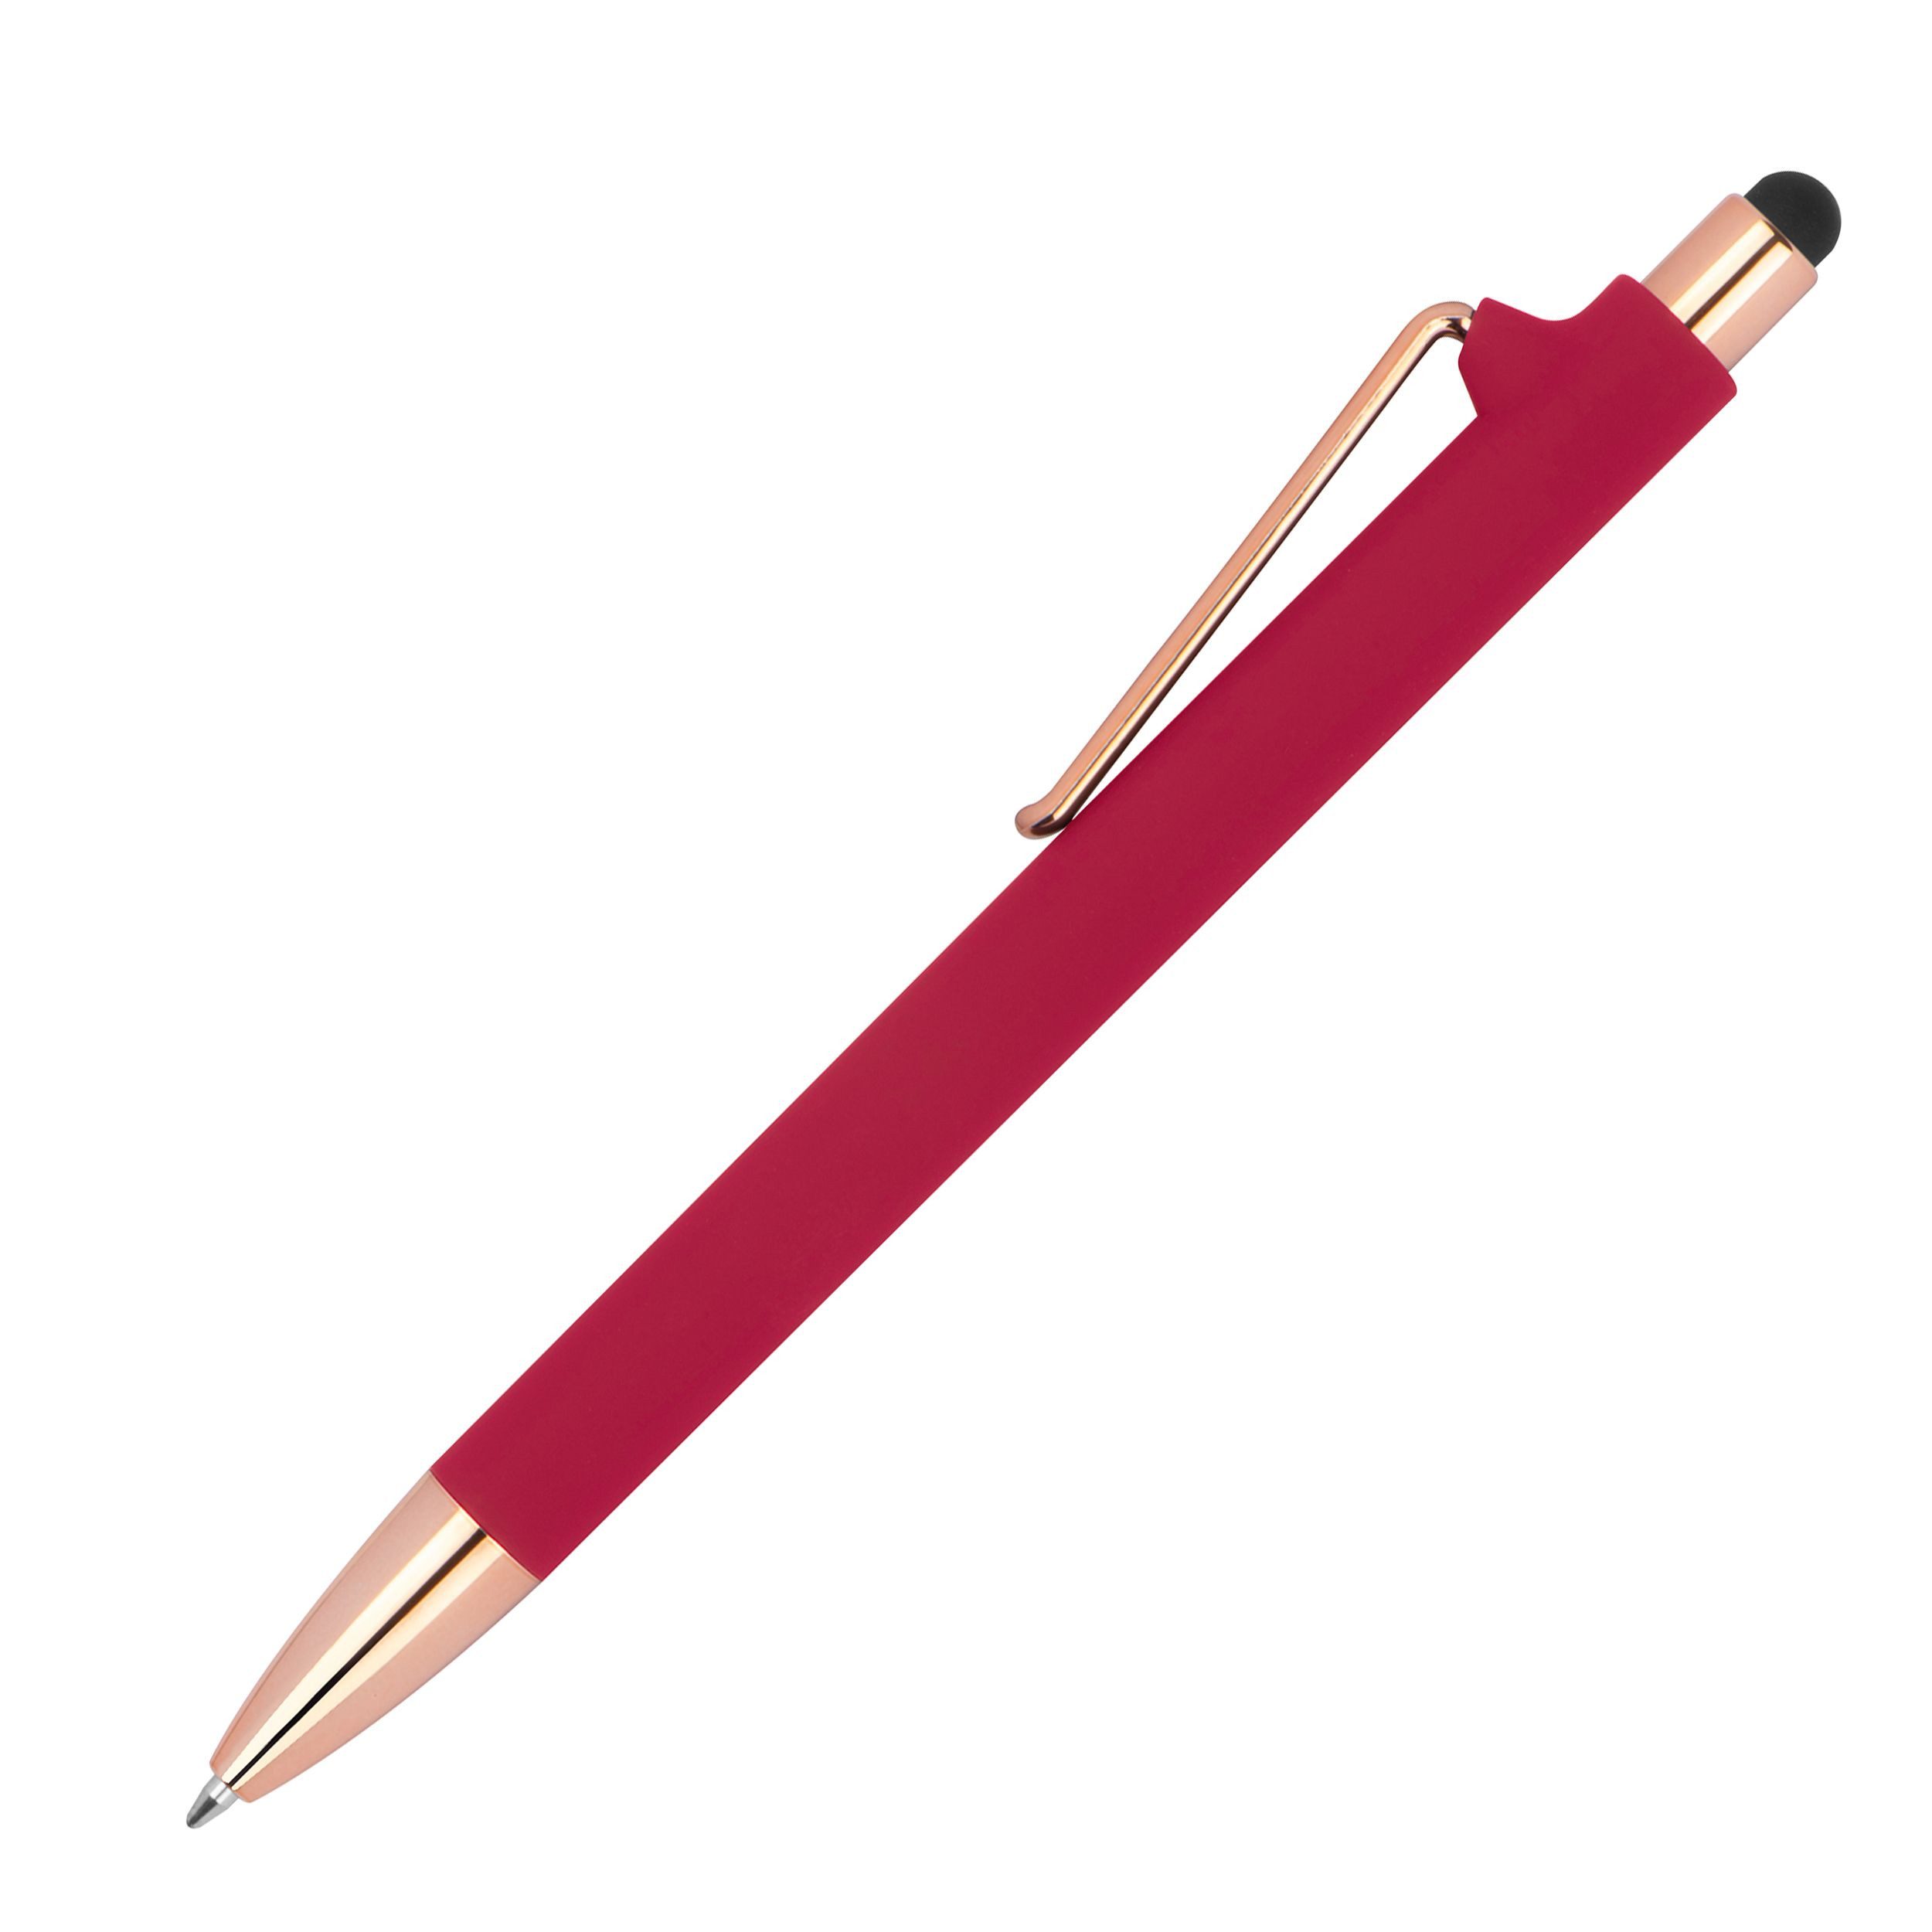 Livepac Office Kugelschreiber Touchpen-Kugelschreiber aus Metall / gummiert / Farbe: roségold-rot